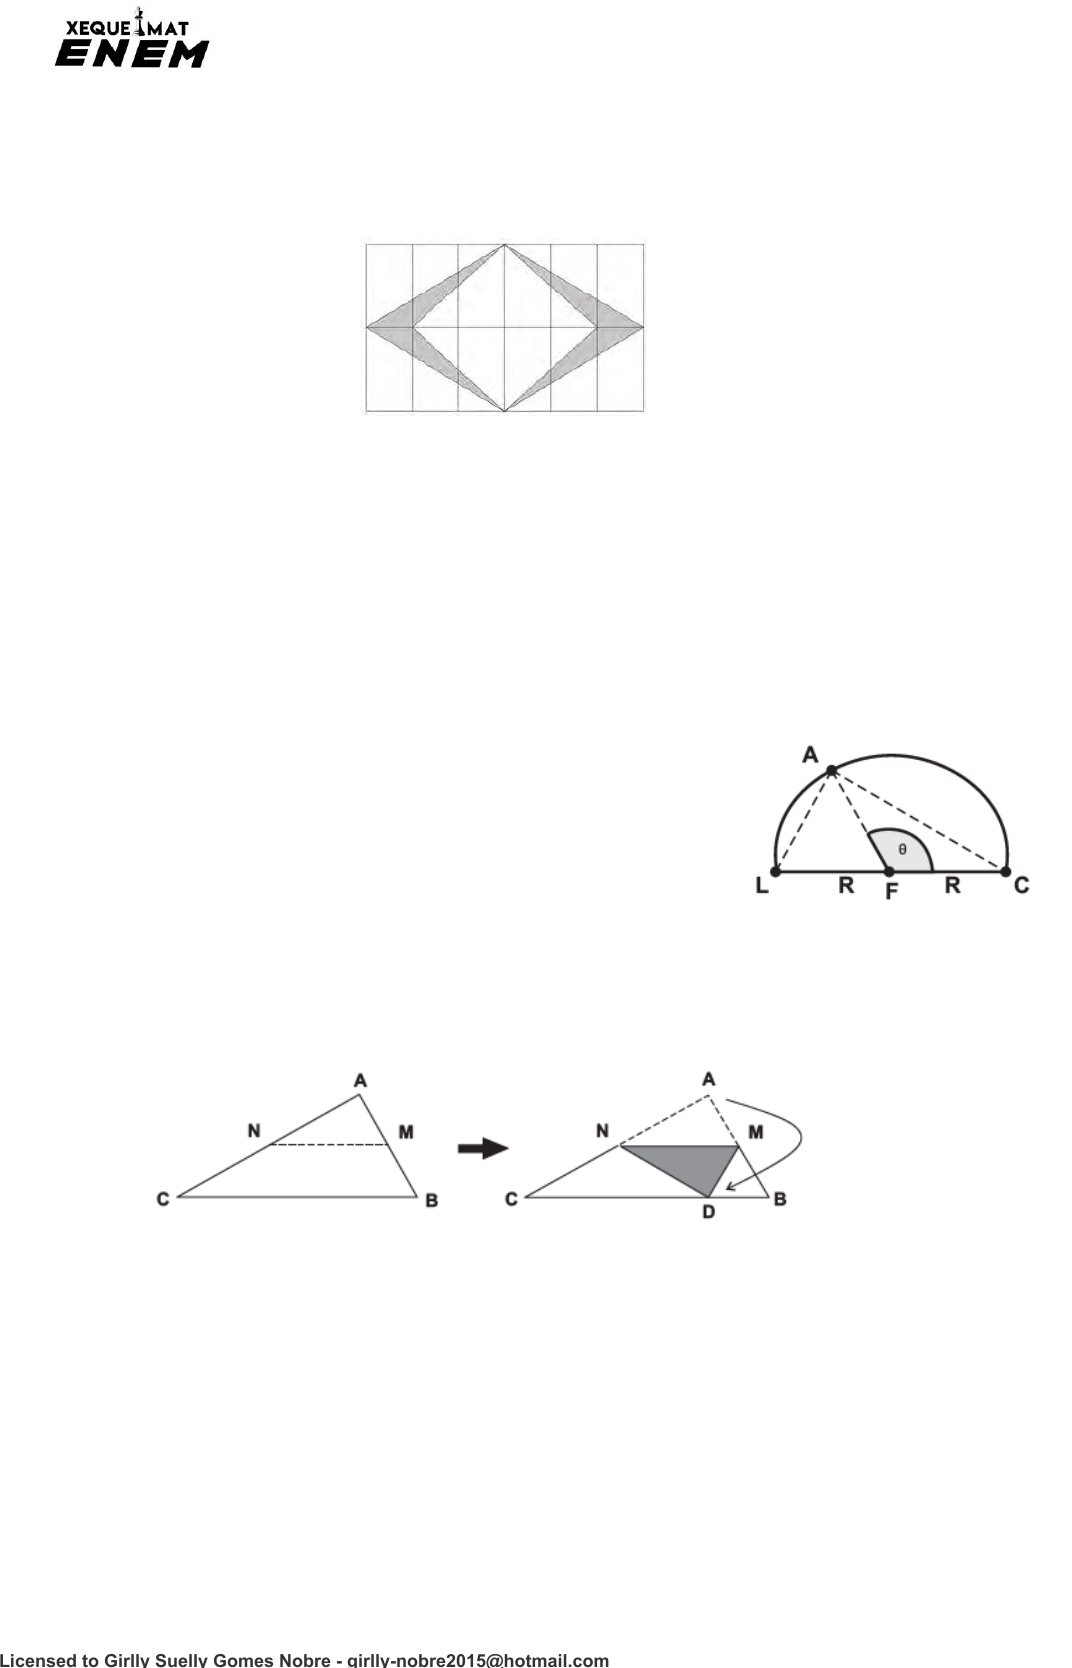 xequemat enem - lista de exercícios live 46, PDF, Origami